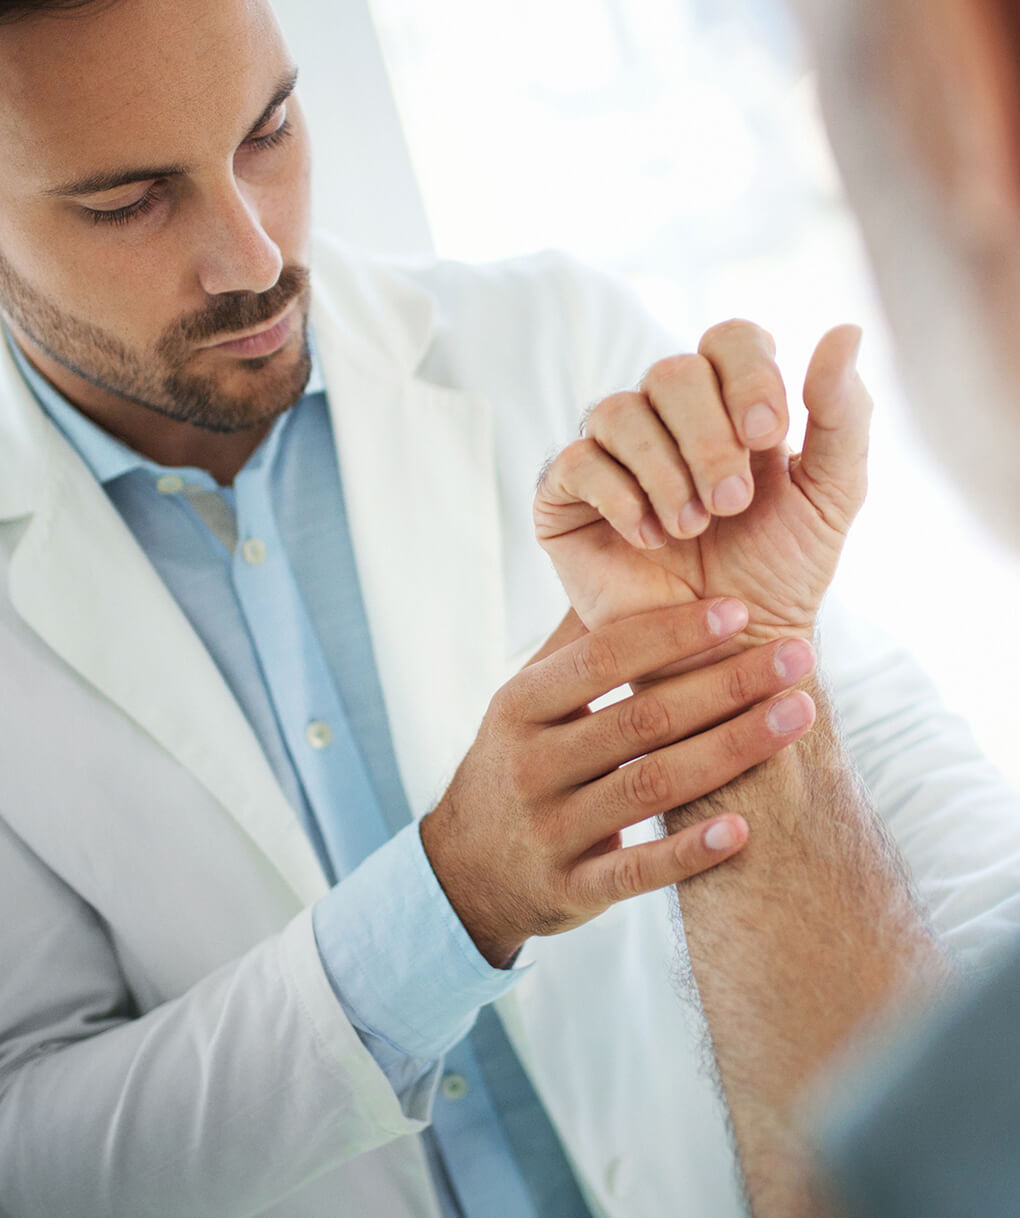 Wrist injury doctor in Milwaukee: pain, bruising, and broken